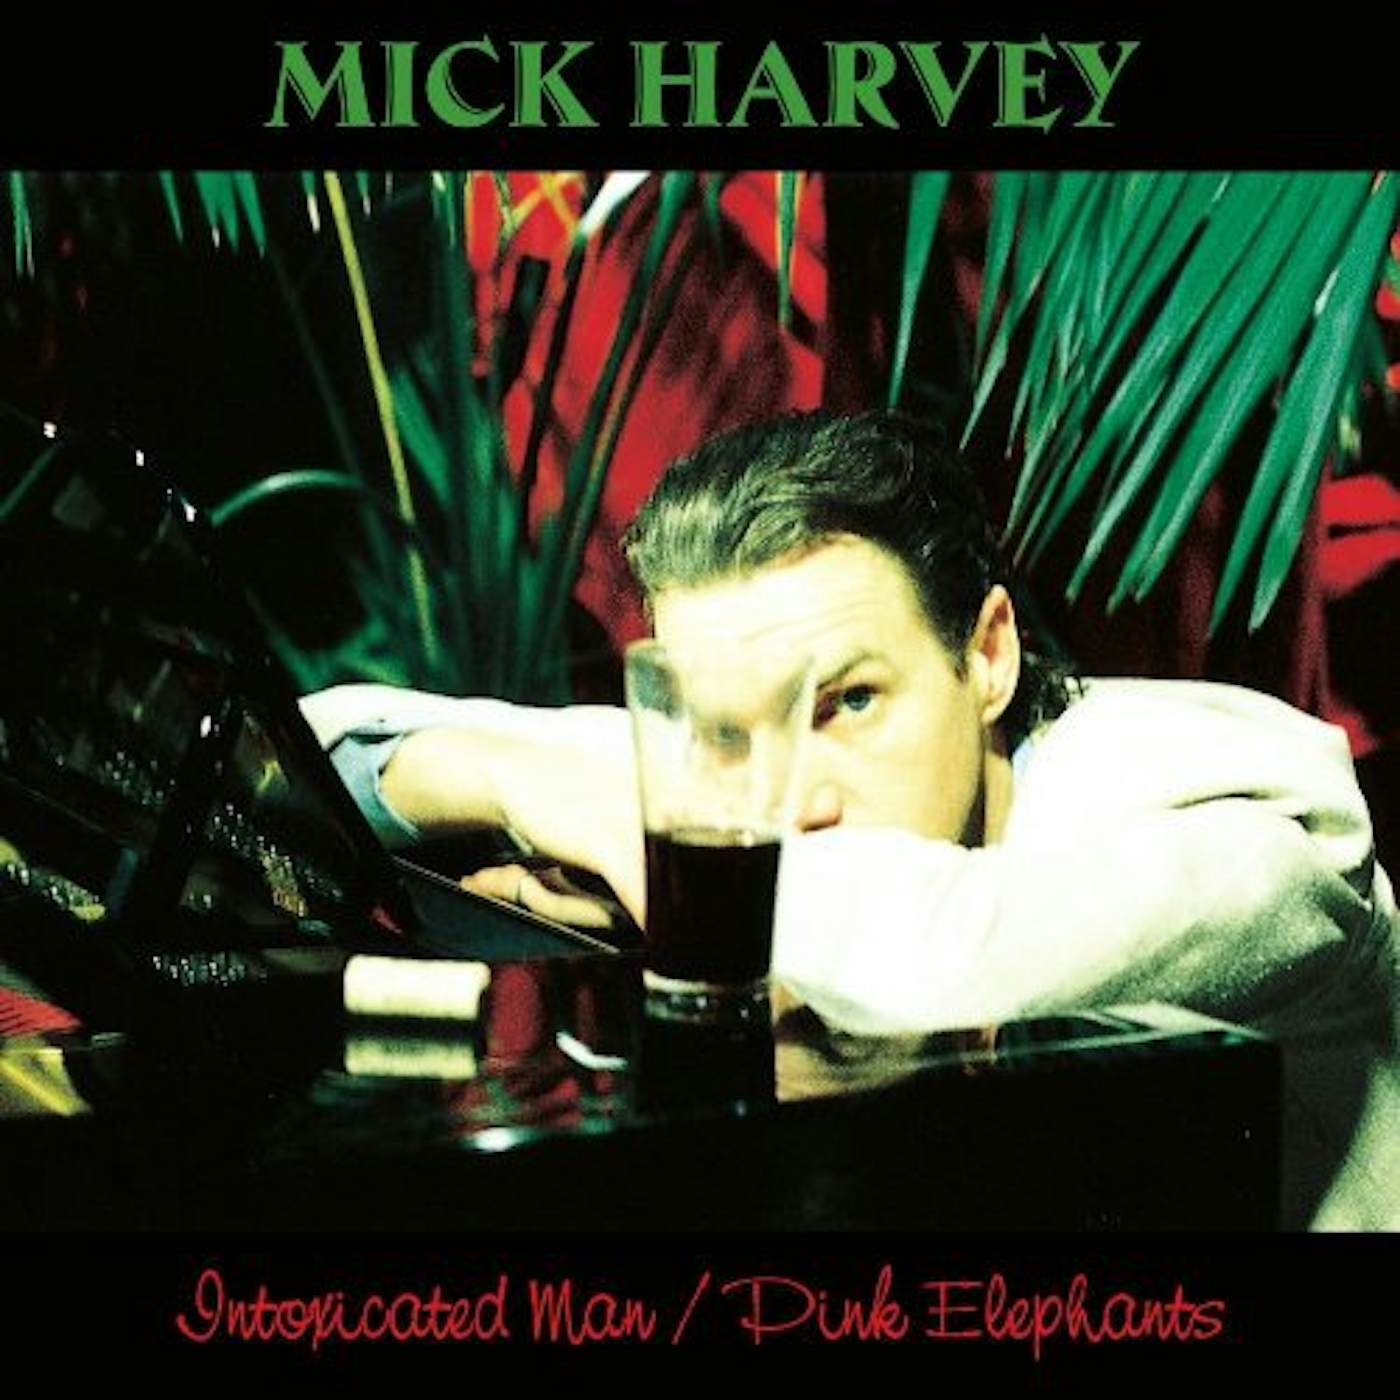 Mick Harvey Intoxicated Man / Pink Elephants Vinyl Record